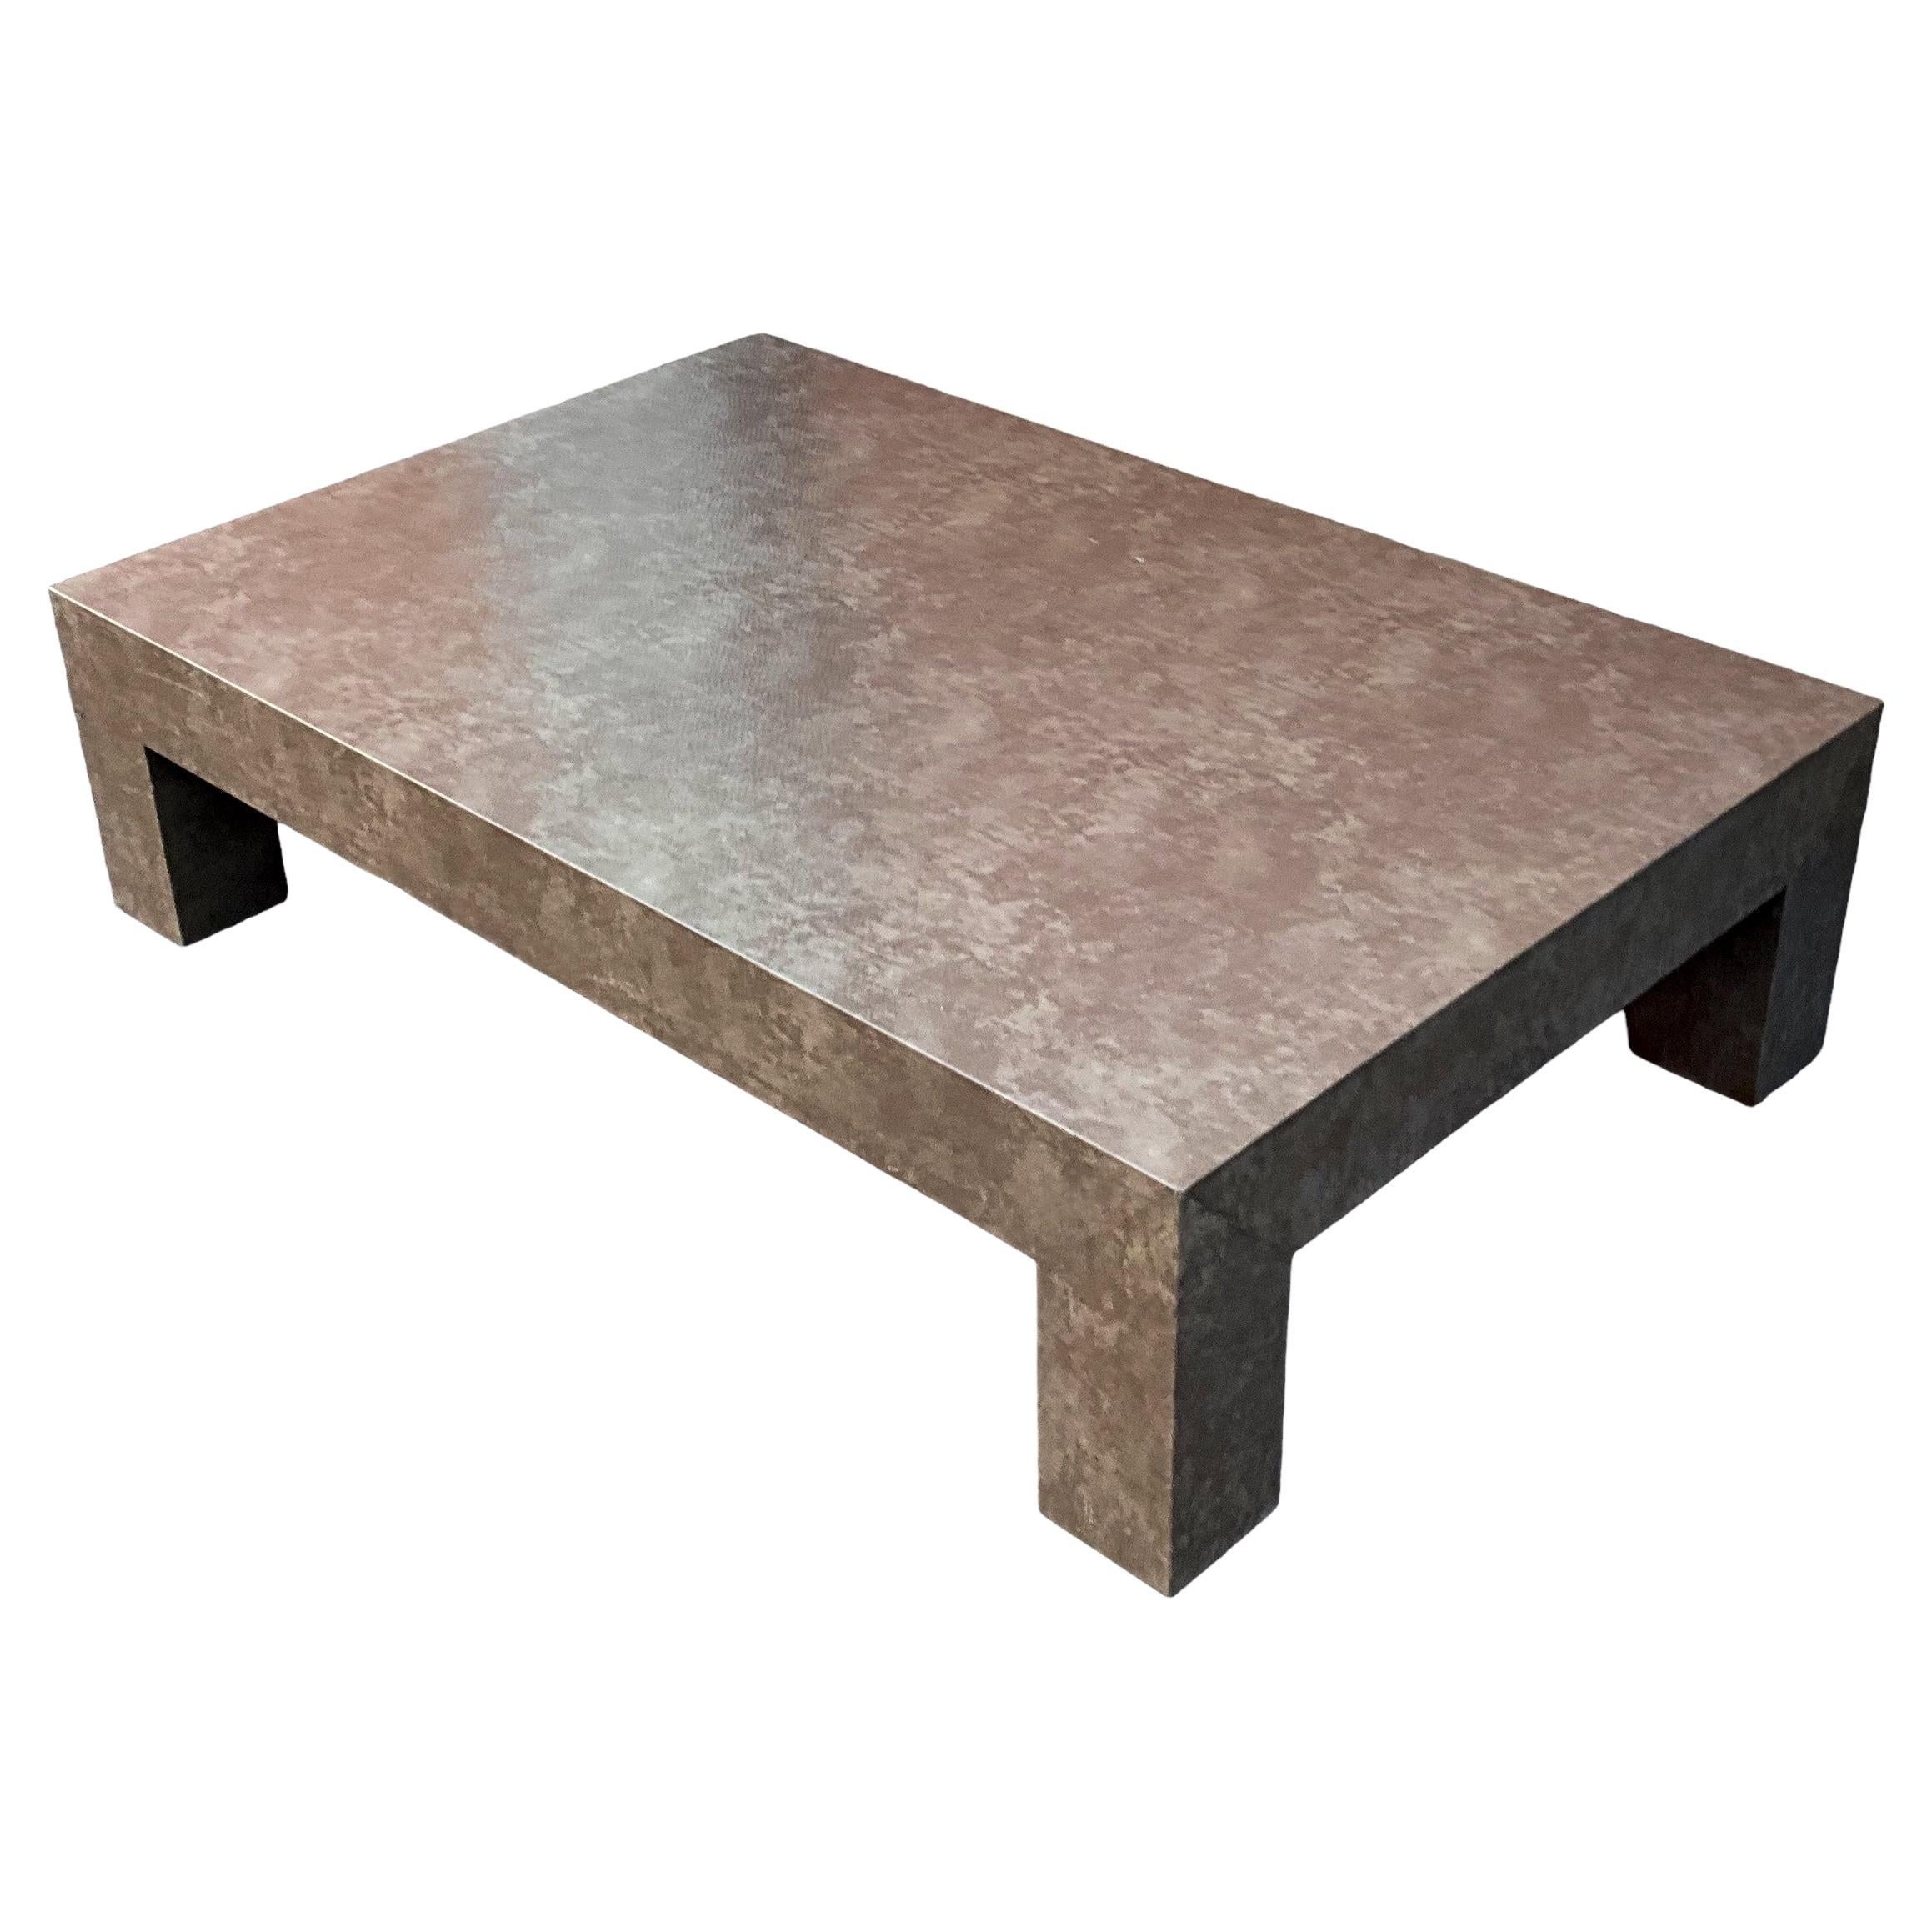 Il s'agit d'une table basse moderne de style Parsons à grande échelle, enveloppée d'une fausse peau de serpent. Le ton général est un taupe apaisant. Il n'est pas marqué et date probablement des années 70. 